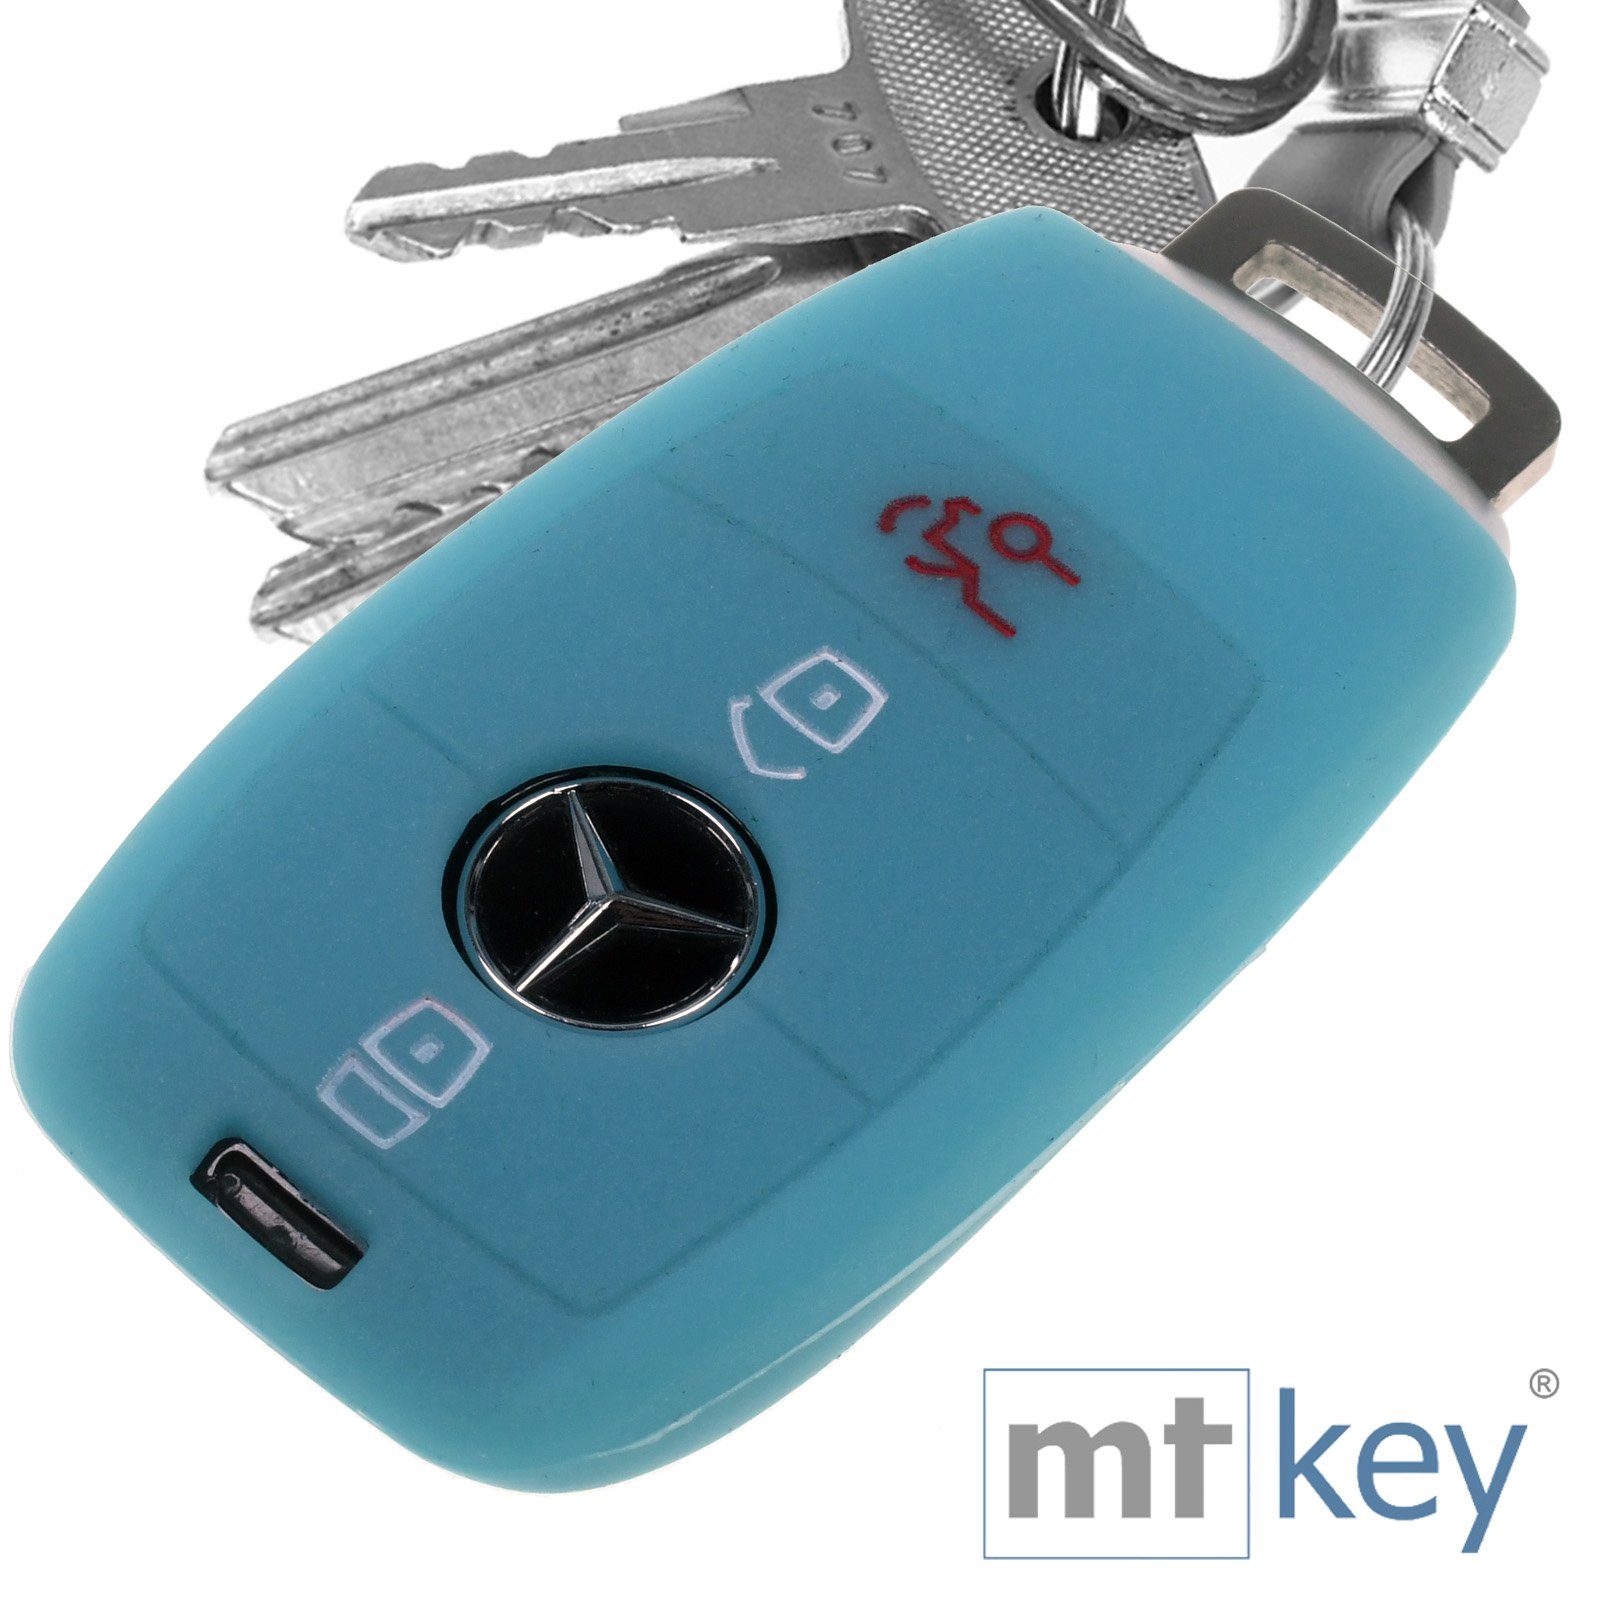 mt-key Schlüsseltasche Autoschlüssel Softcase Silikon Schutzhülle fluoreszierend Blau, für Mercedes Benz E-Klasse W213 S213 C238 A238 3 Tasten KEYLESS